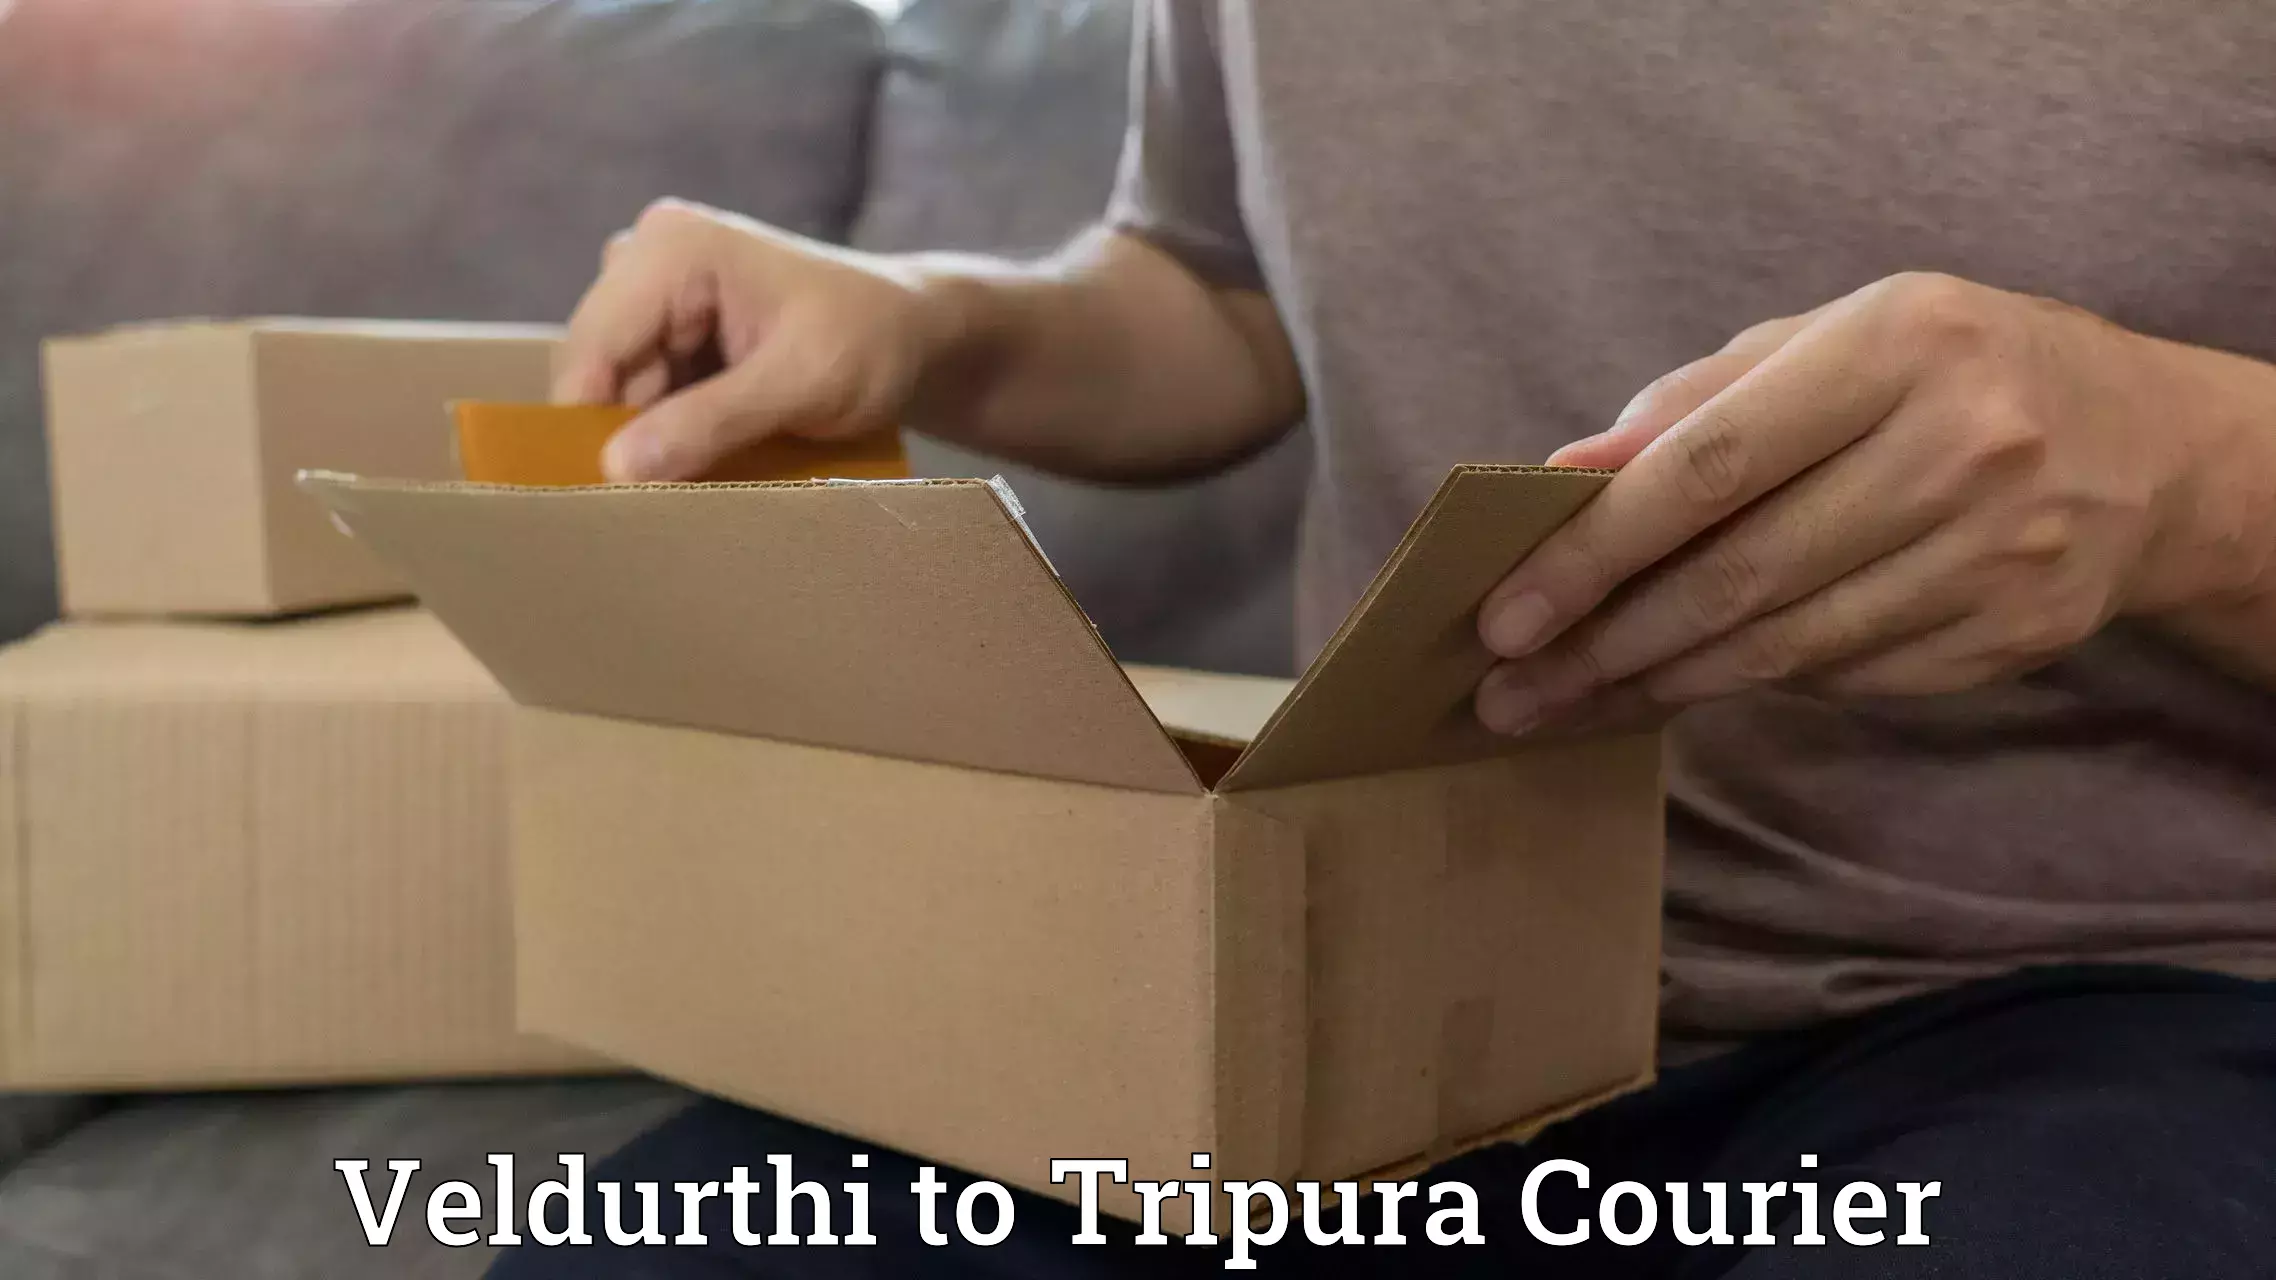 Same-day delivery options Veldurthi to Tripura